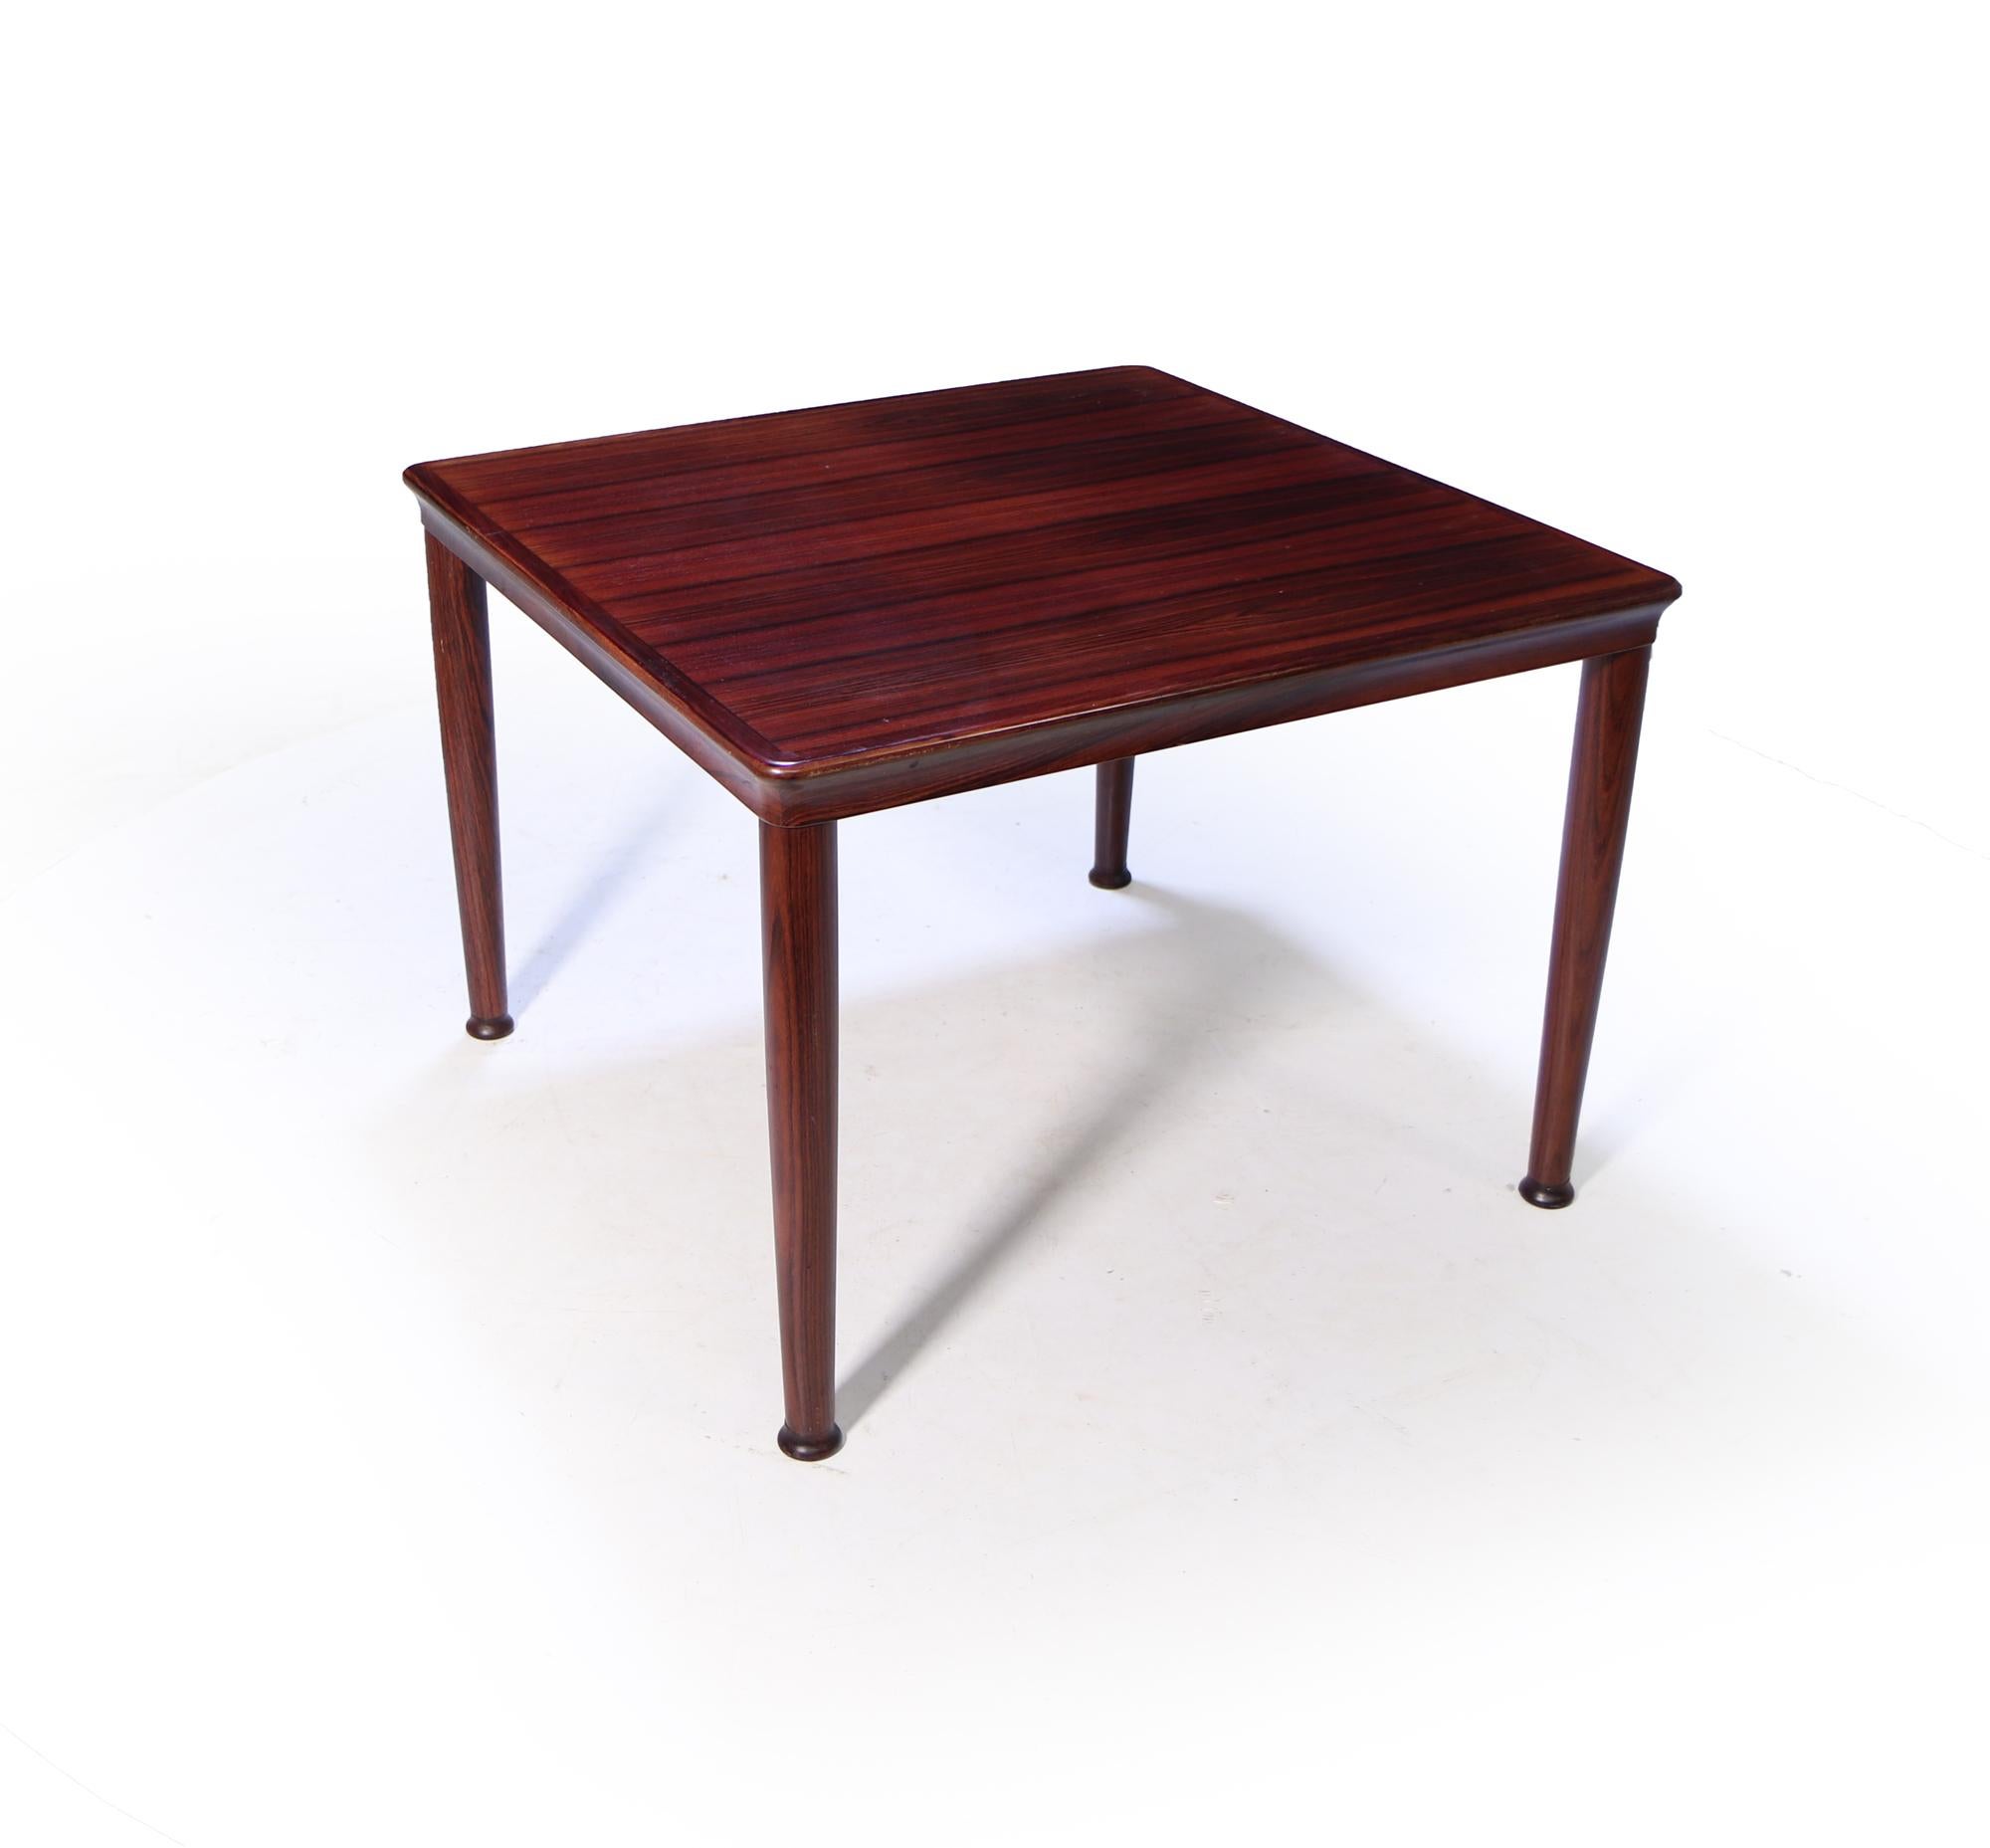 Une table d'appoint de grande qualité par le maître ébéniste danois Vijle stole, avec des pieds tournés et un bord supérieur façonné, le tout en excellent état d'origine avec l'étiquette du fabricant sous la table

Âge : 1960

Style : Moderne du